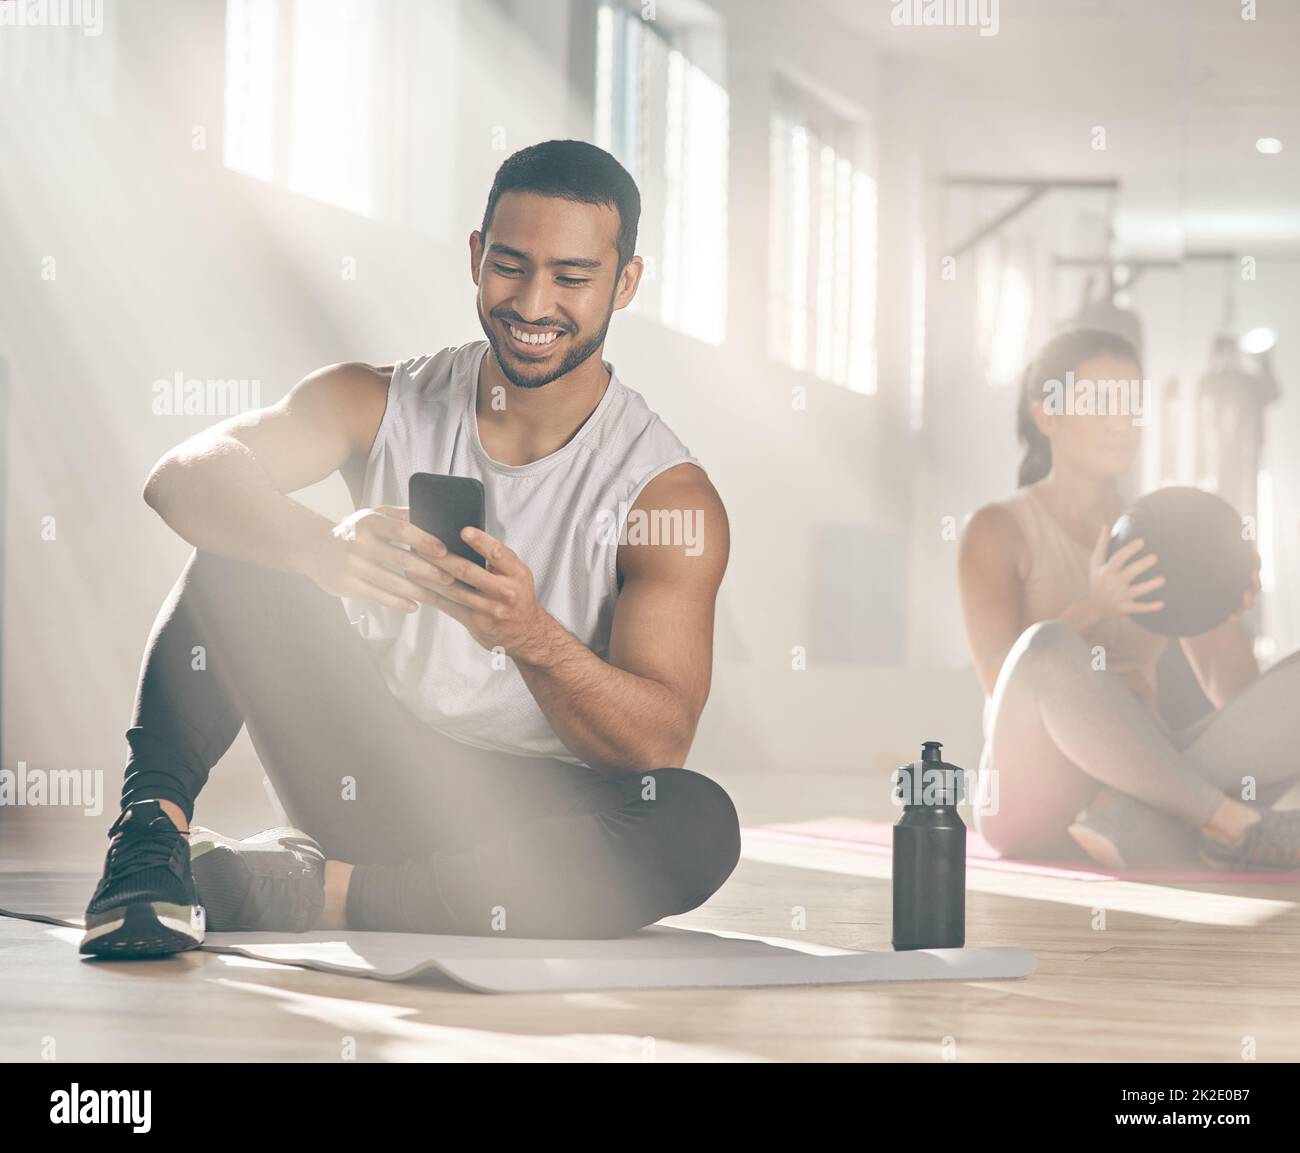 Questa app mi aiuta a restare in linea con i miei obiettivi di fitness. Scatto di un uomo che usa il suo cellulare mentre si fa una pausa in palestra. Foto Stock